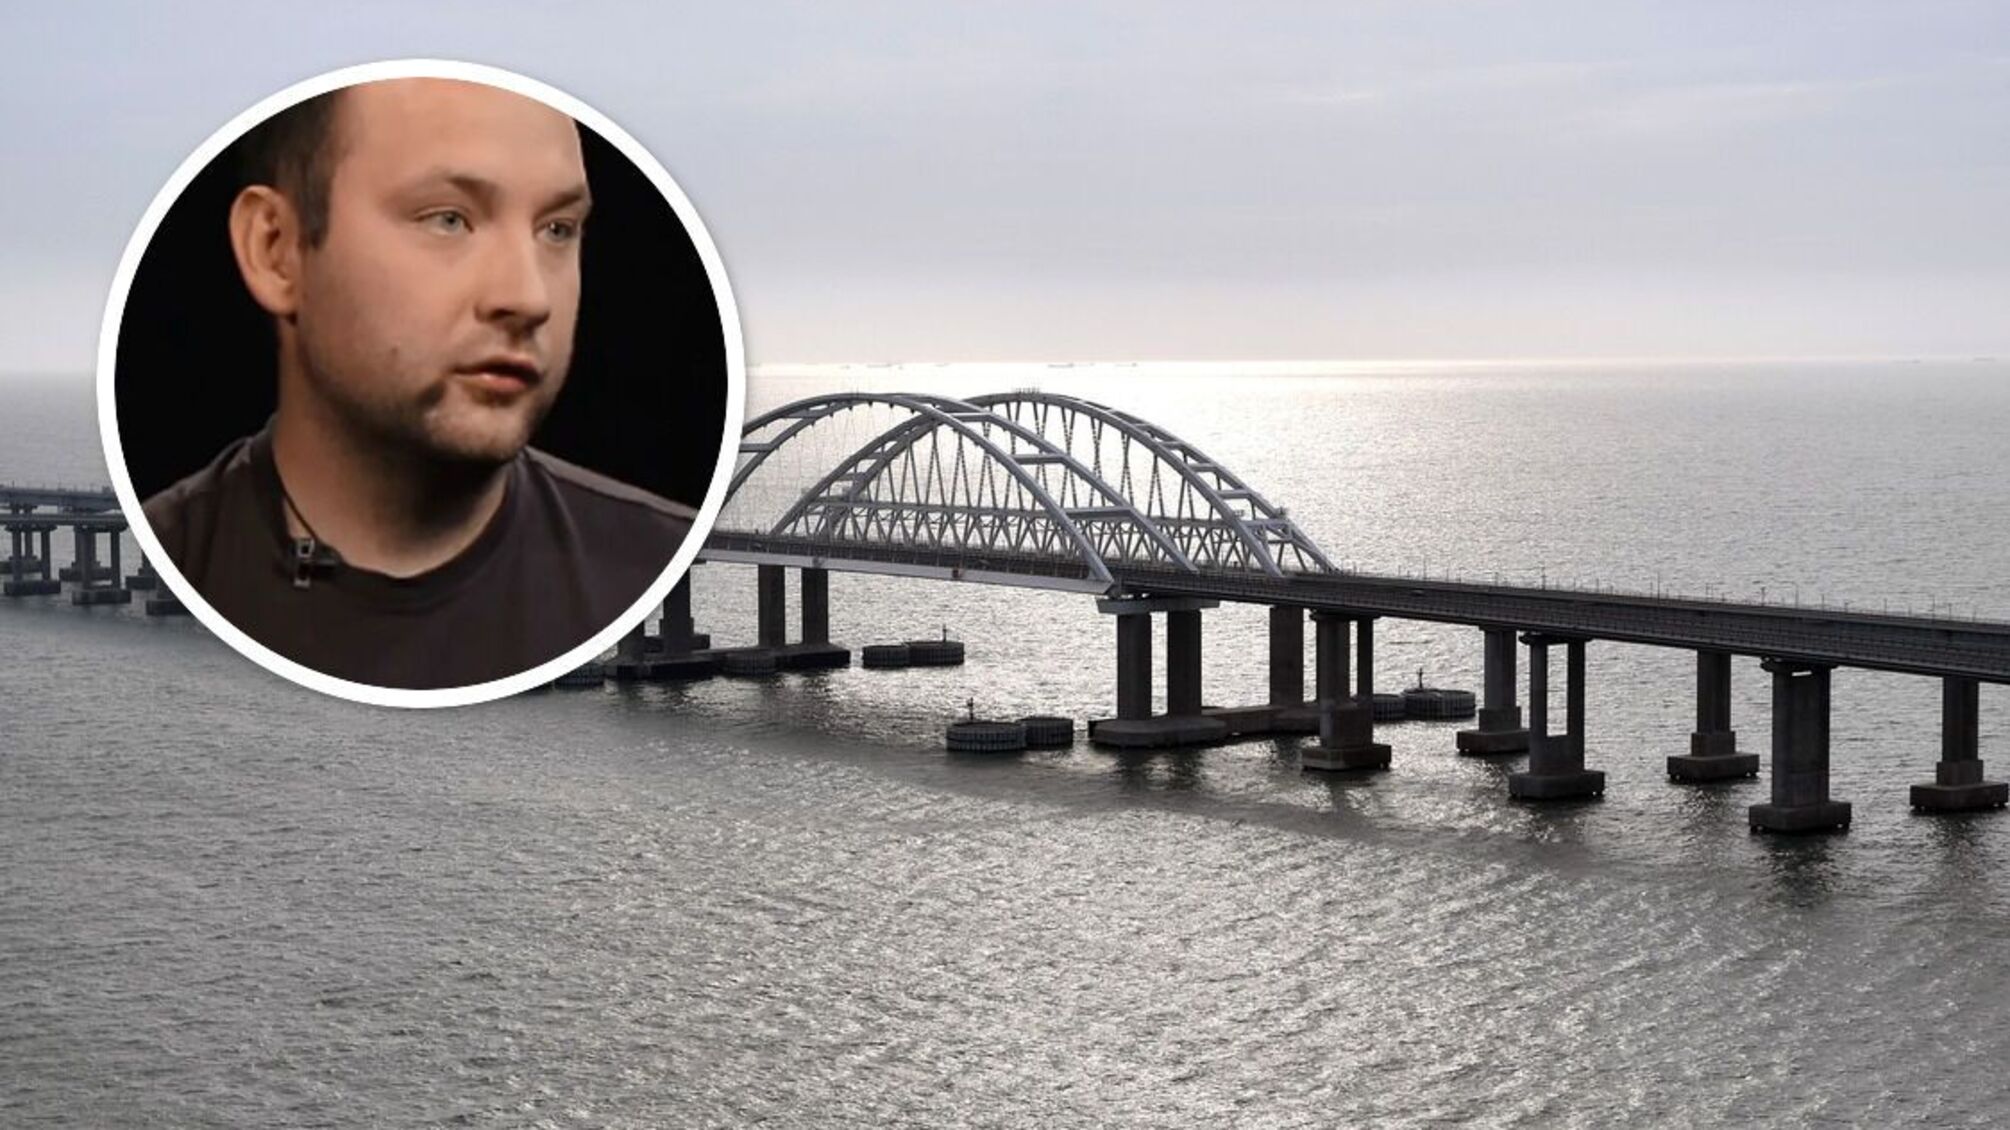 HIMARS могут подправить архитектуру Керченского моста, – Макарук из InformNapalm